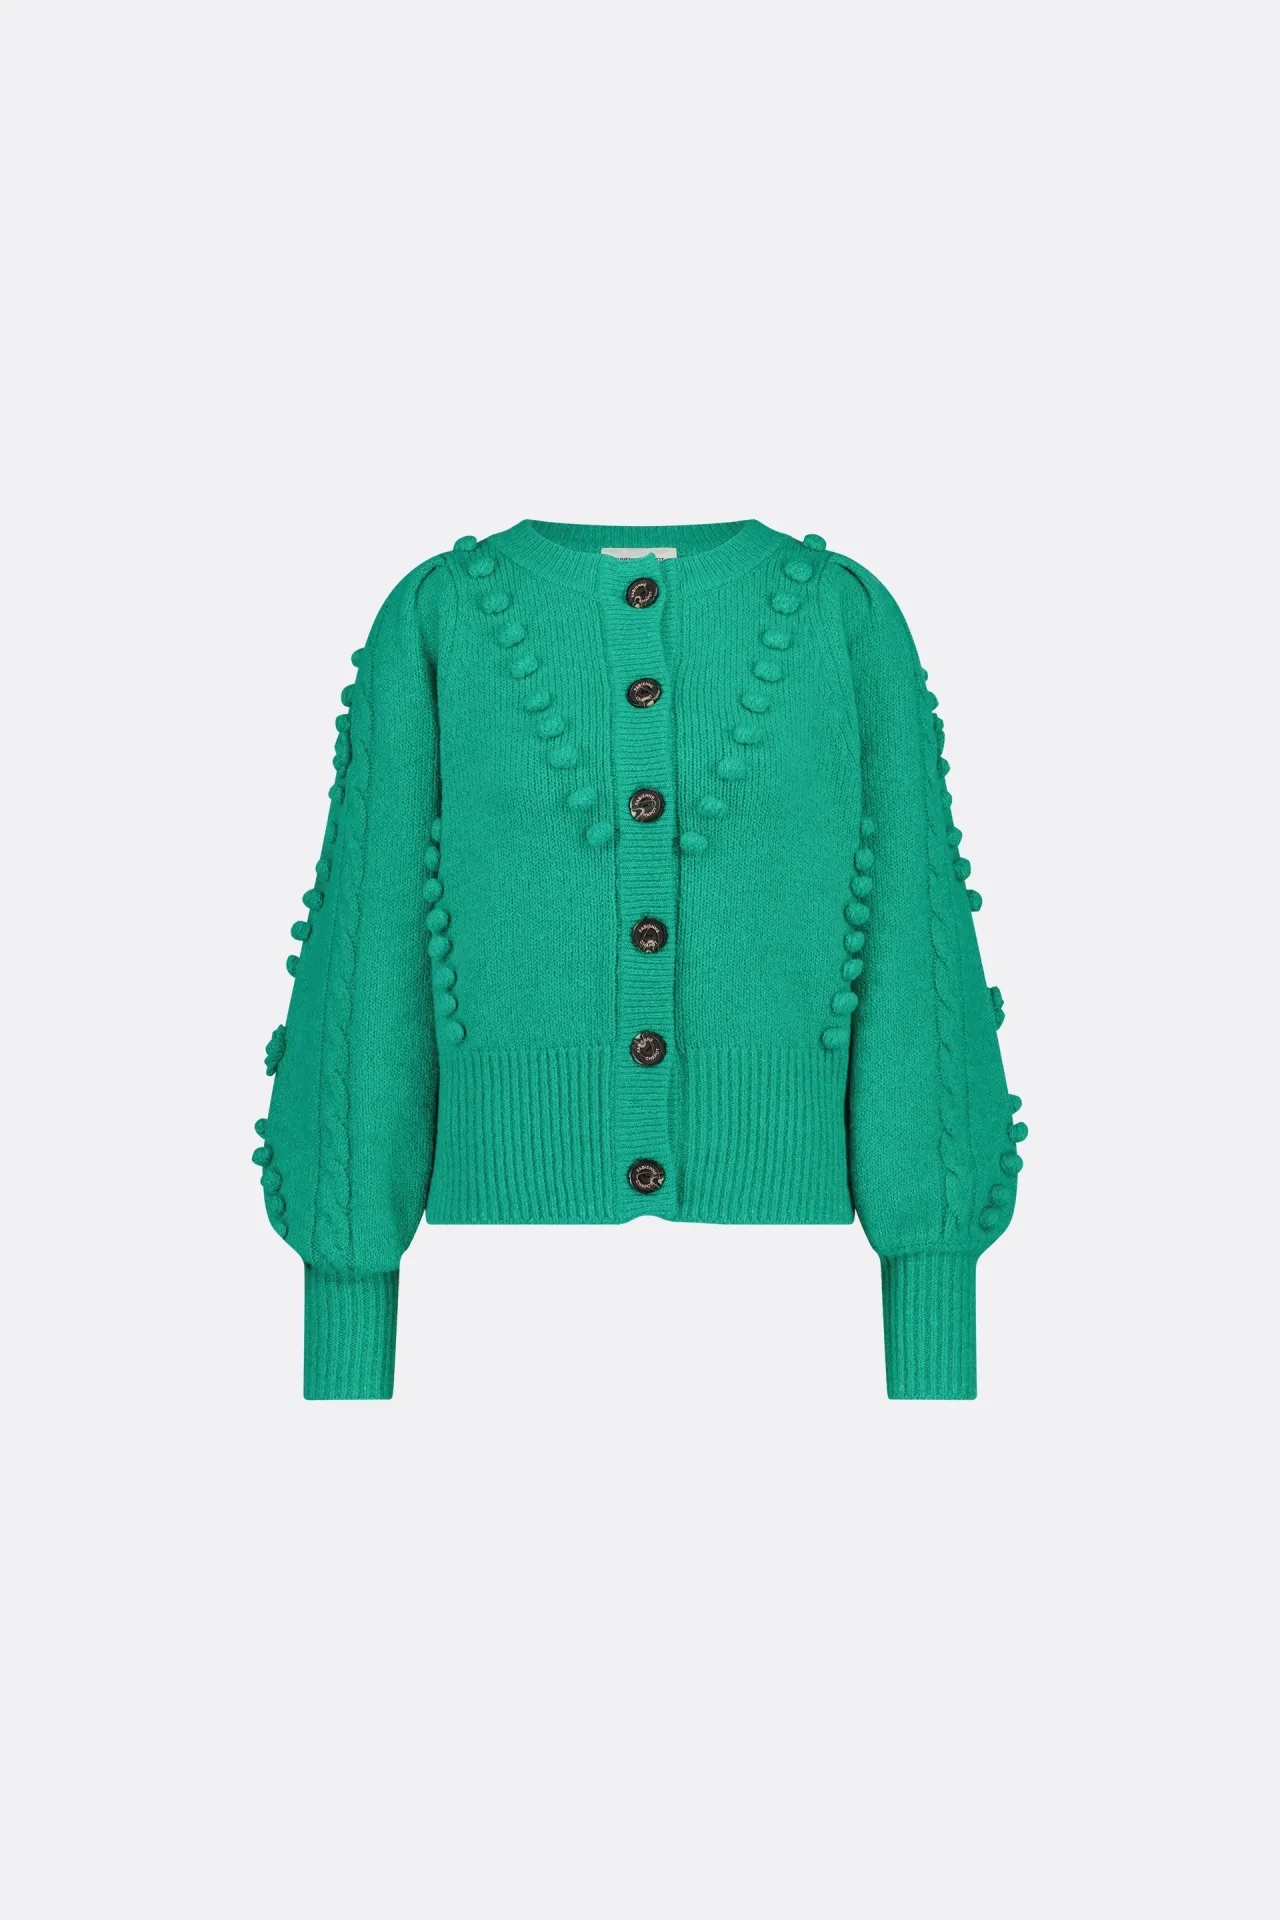 Groene dames blouse Fabienne Chapot - Pop cardigan